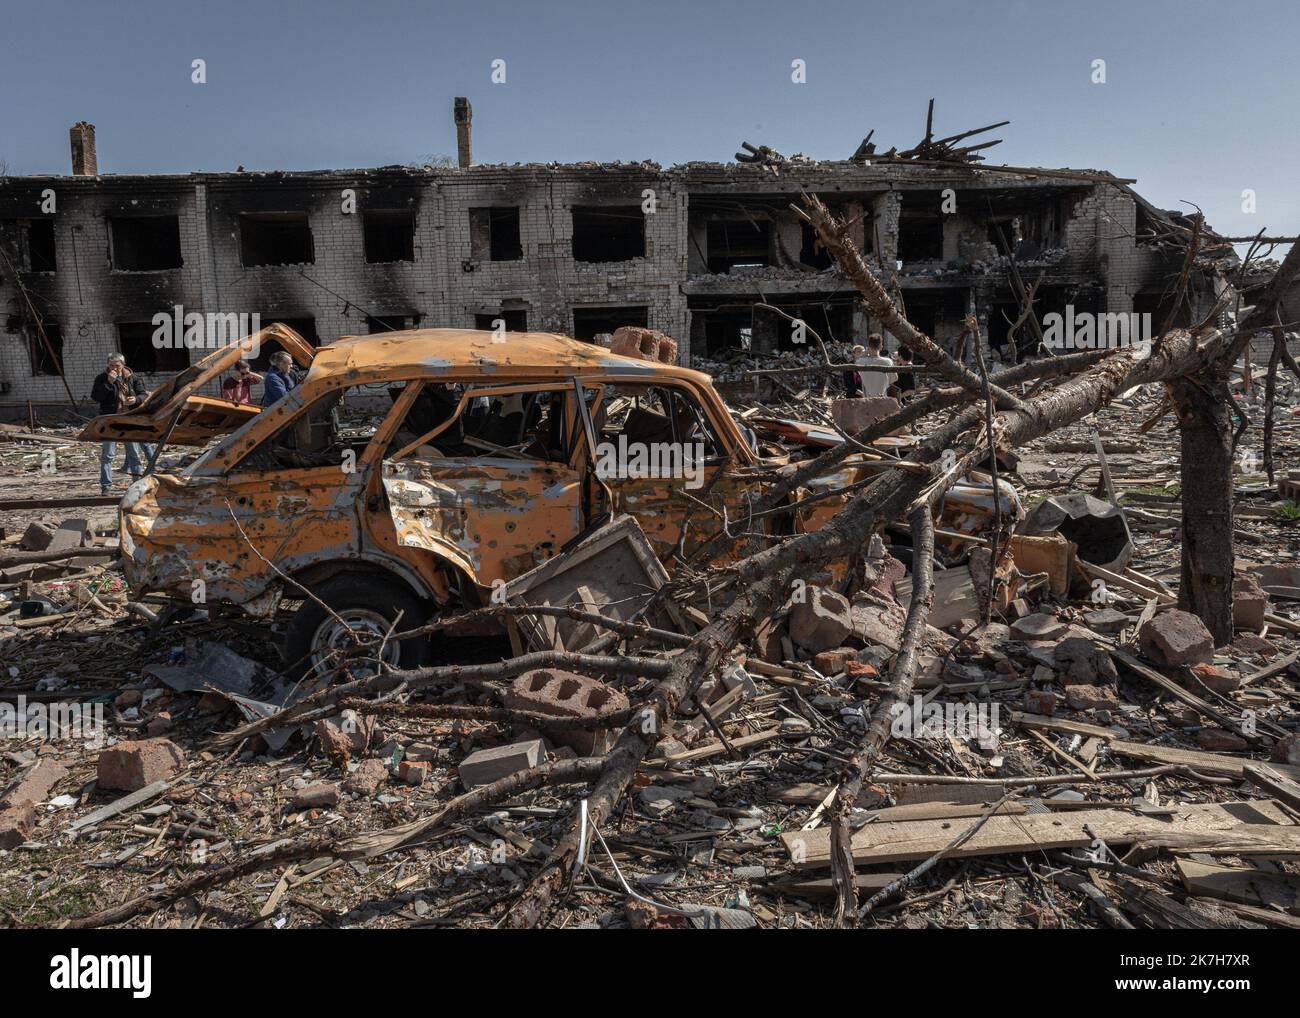 ©Sadak Souici / le Pictorium/MAXPPP - Tchernihiv 15/04/2022 Sadak Souici / le Pictorium - 15/4/2022 - Ucraina / Tchernihiv - une voiture severement endommagee par les bombardiements git dans le quartier de Novoselivka, a Tchernihiv. Tchernihiv, au nord est de Kyiv proche de la frontiere avec la bielorussie, a subit de plein fouet l'avancee russe. Bombardee de maniere intensive, les envahisseurs tenterent dix fois, en vain, d'occuper la ville. Une operation qui couta tres cher a la ville, donnant lieu a des quartiers entierement detruits, des immeubles eventres, et des vies brisees. Selon le gou Foto Stock